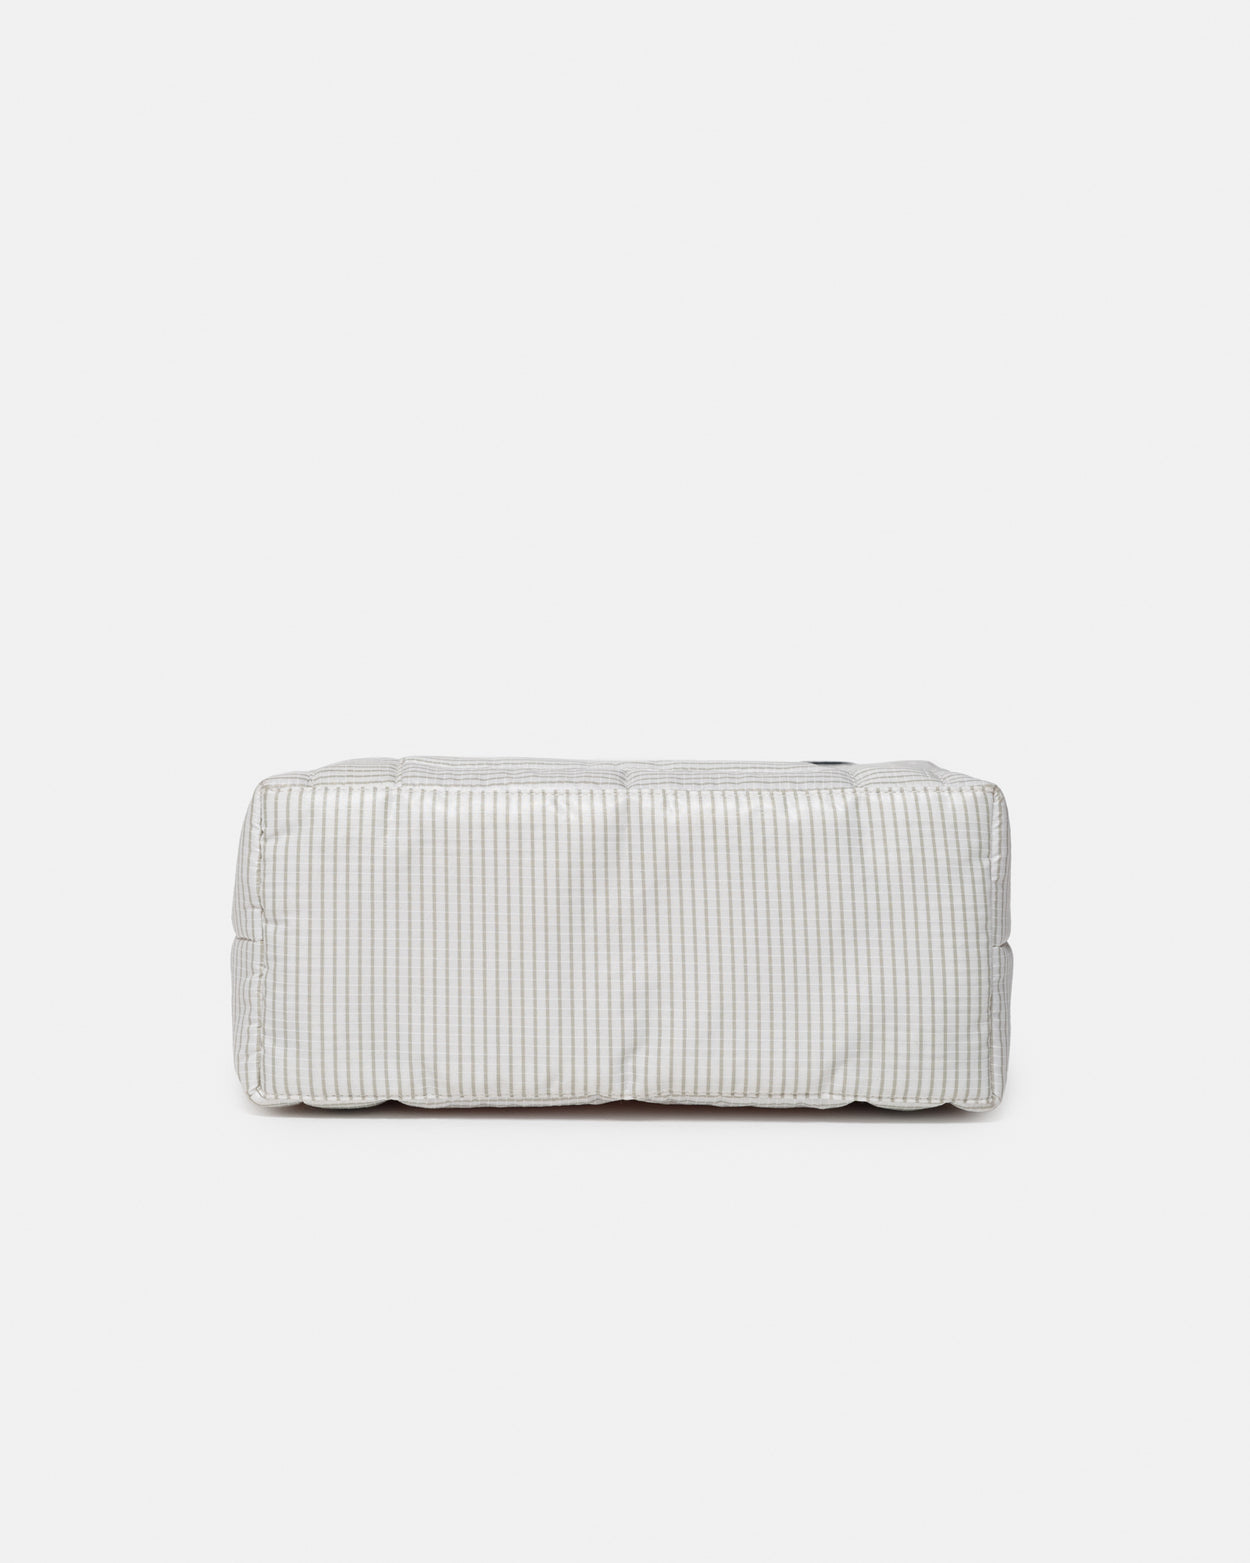 Striped White Mini Puffer Bag